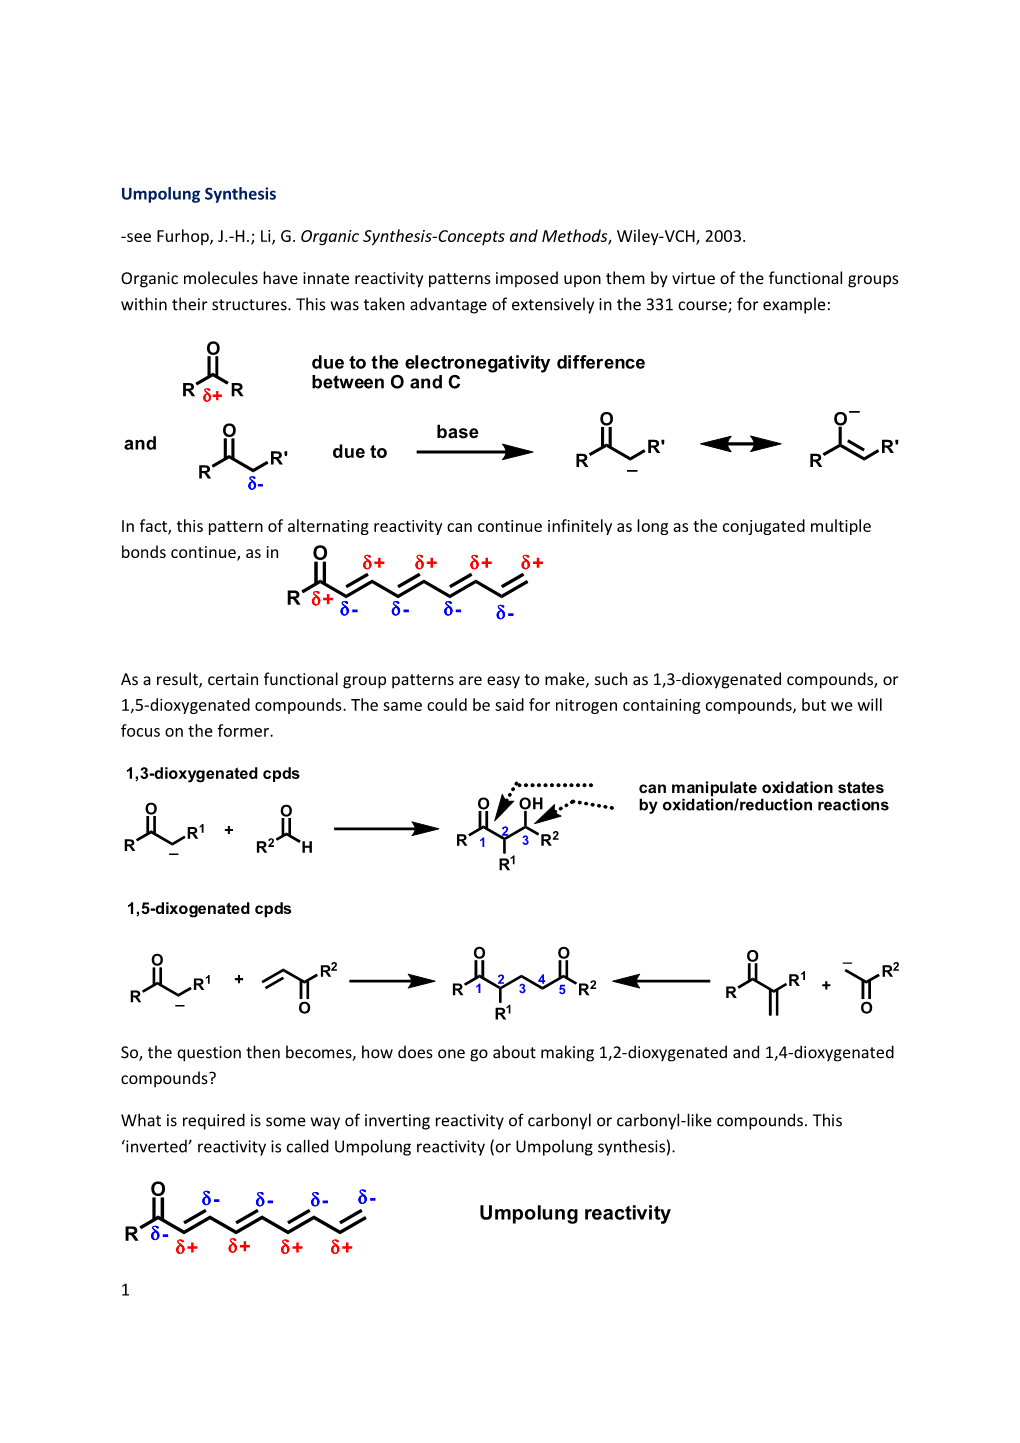 Umpolung Synthesis-1-2Dioxygenatedx